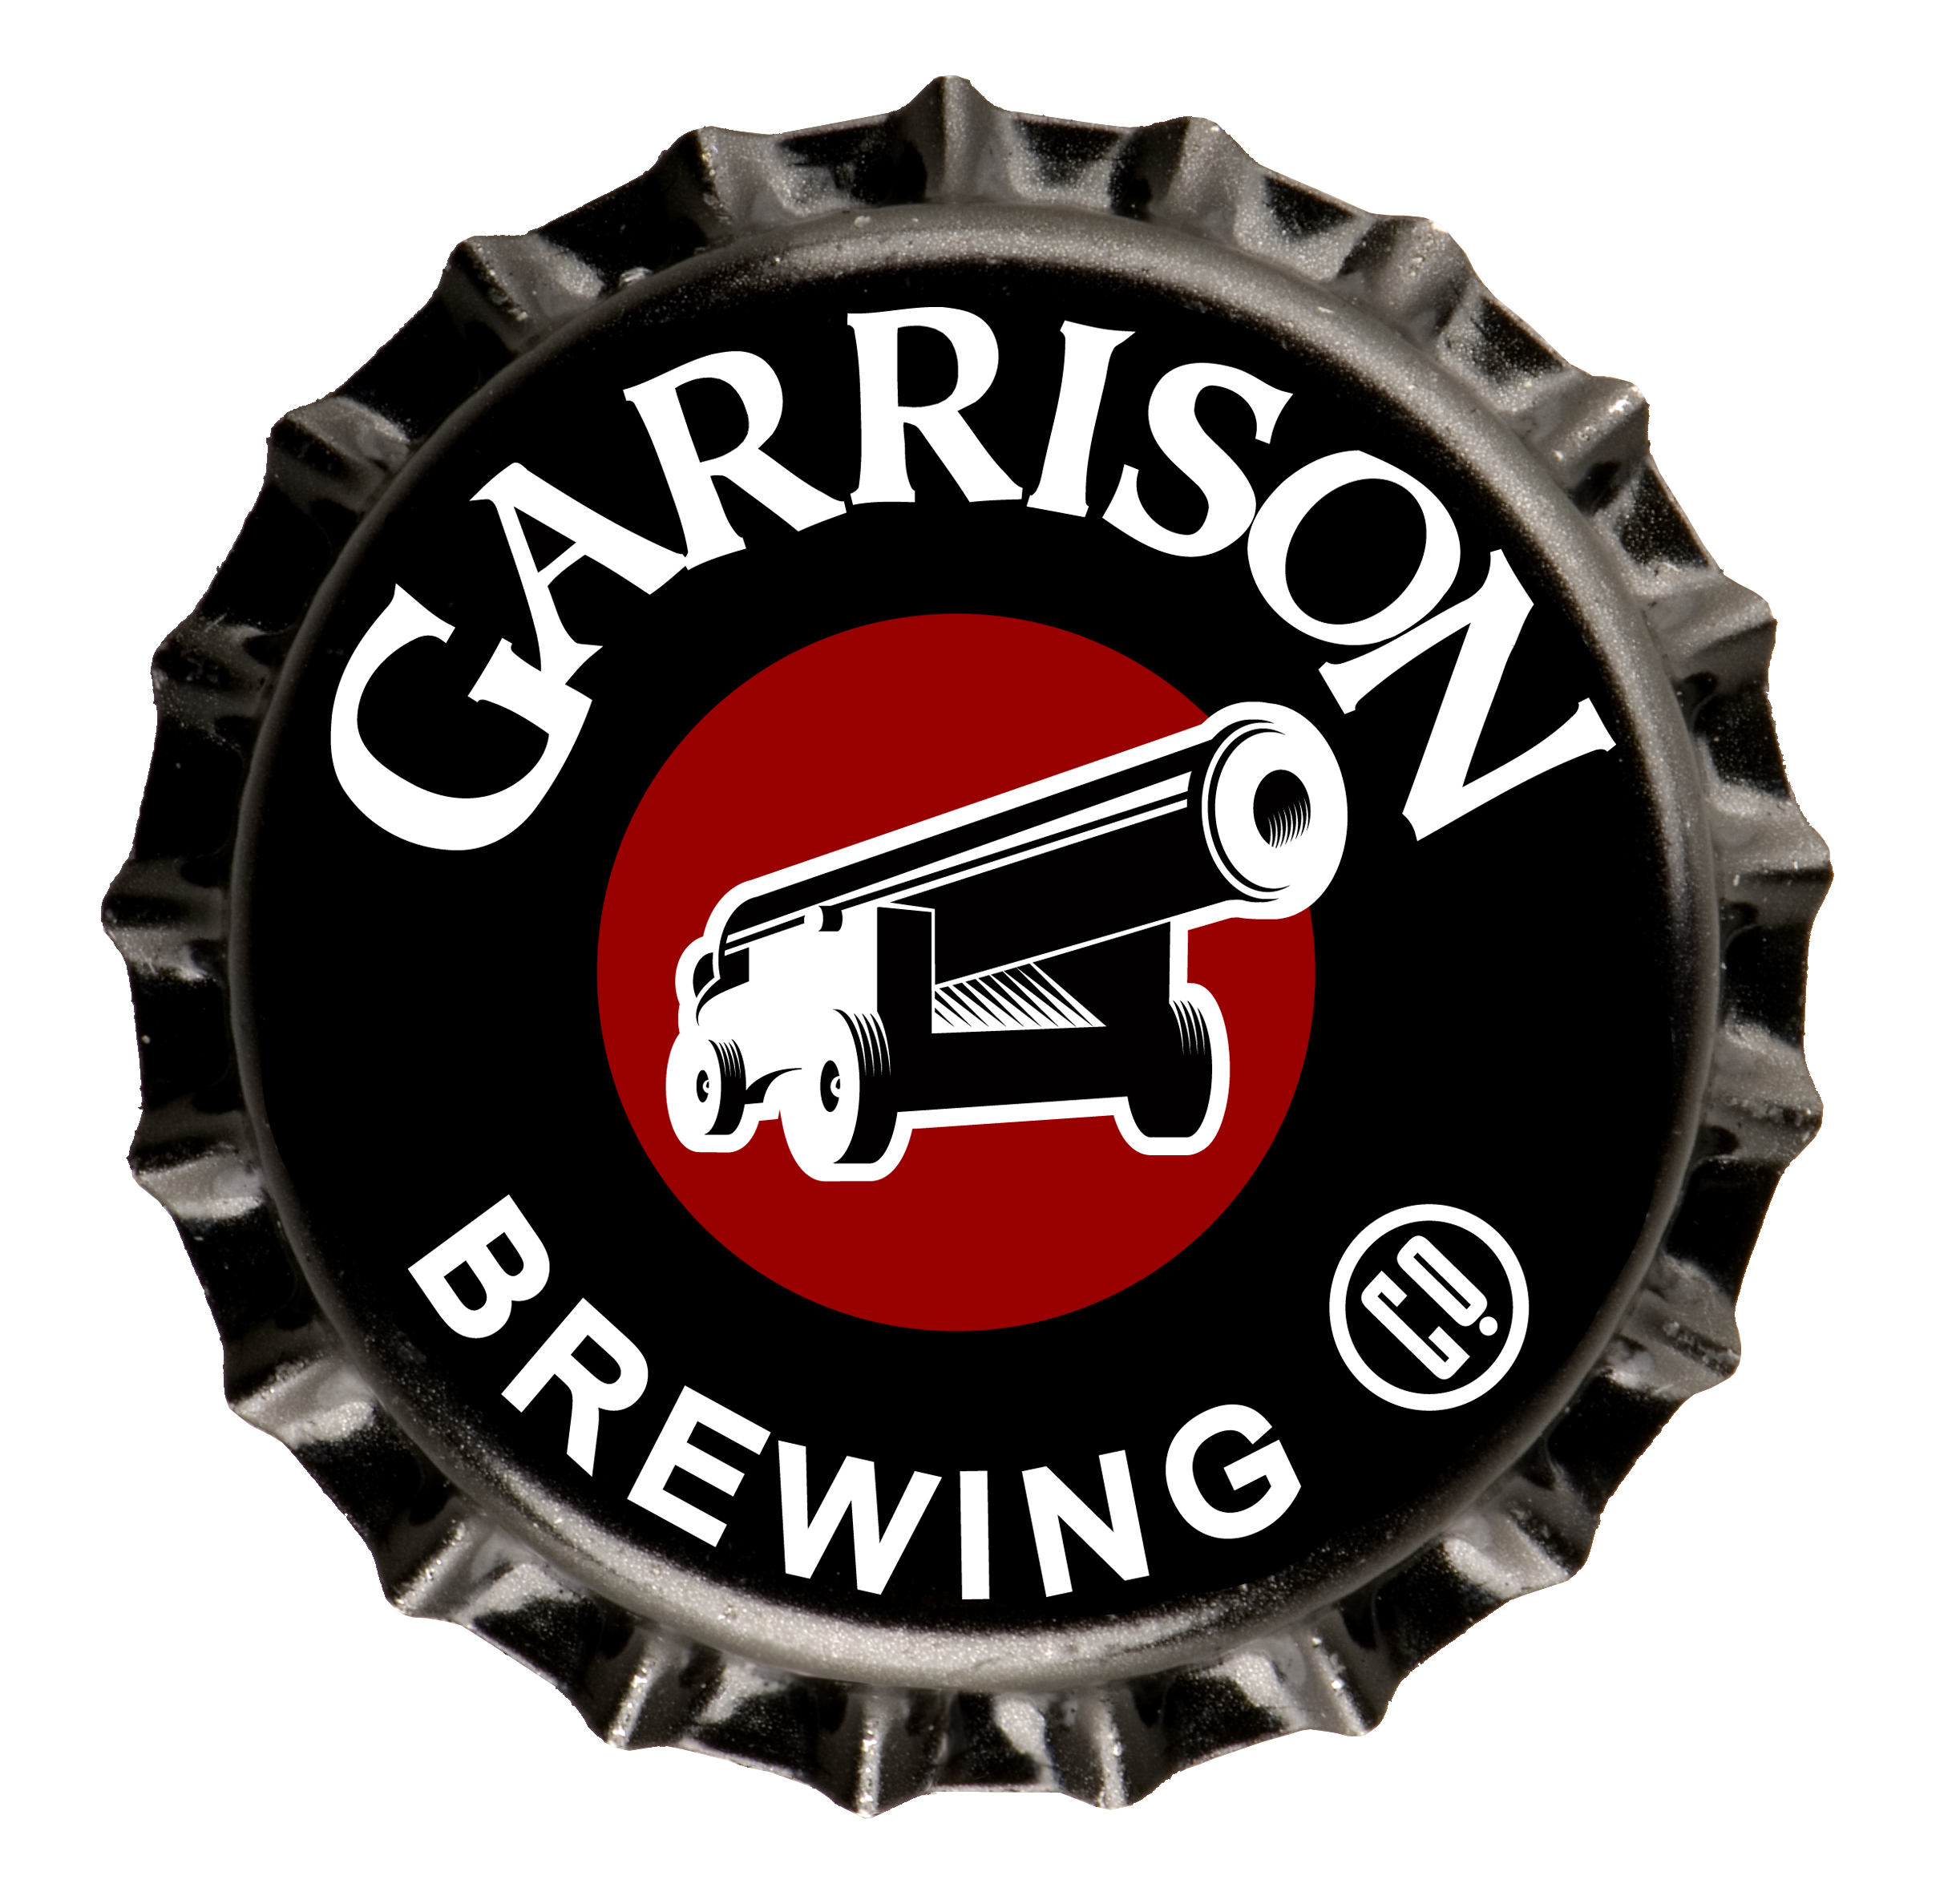 http://www.onbeer.org/wp-content/uploads/2011/01/garrison-logo.jpg